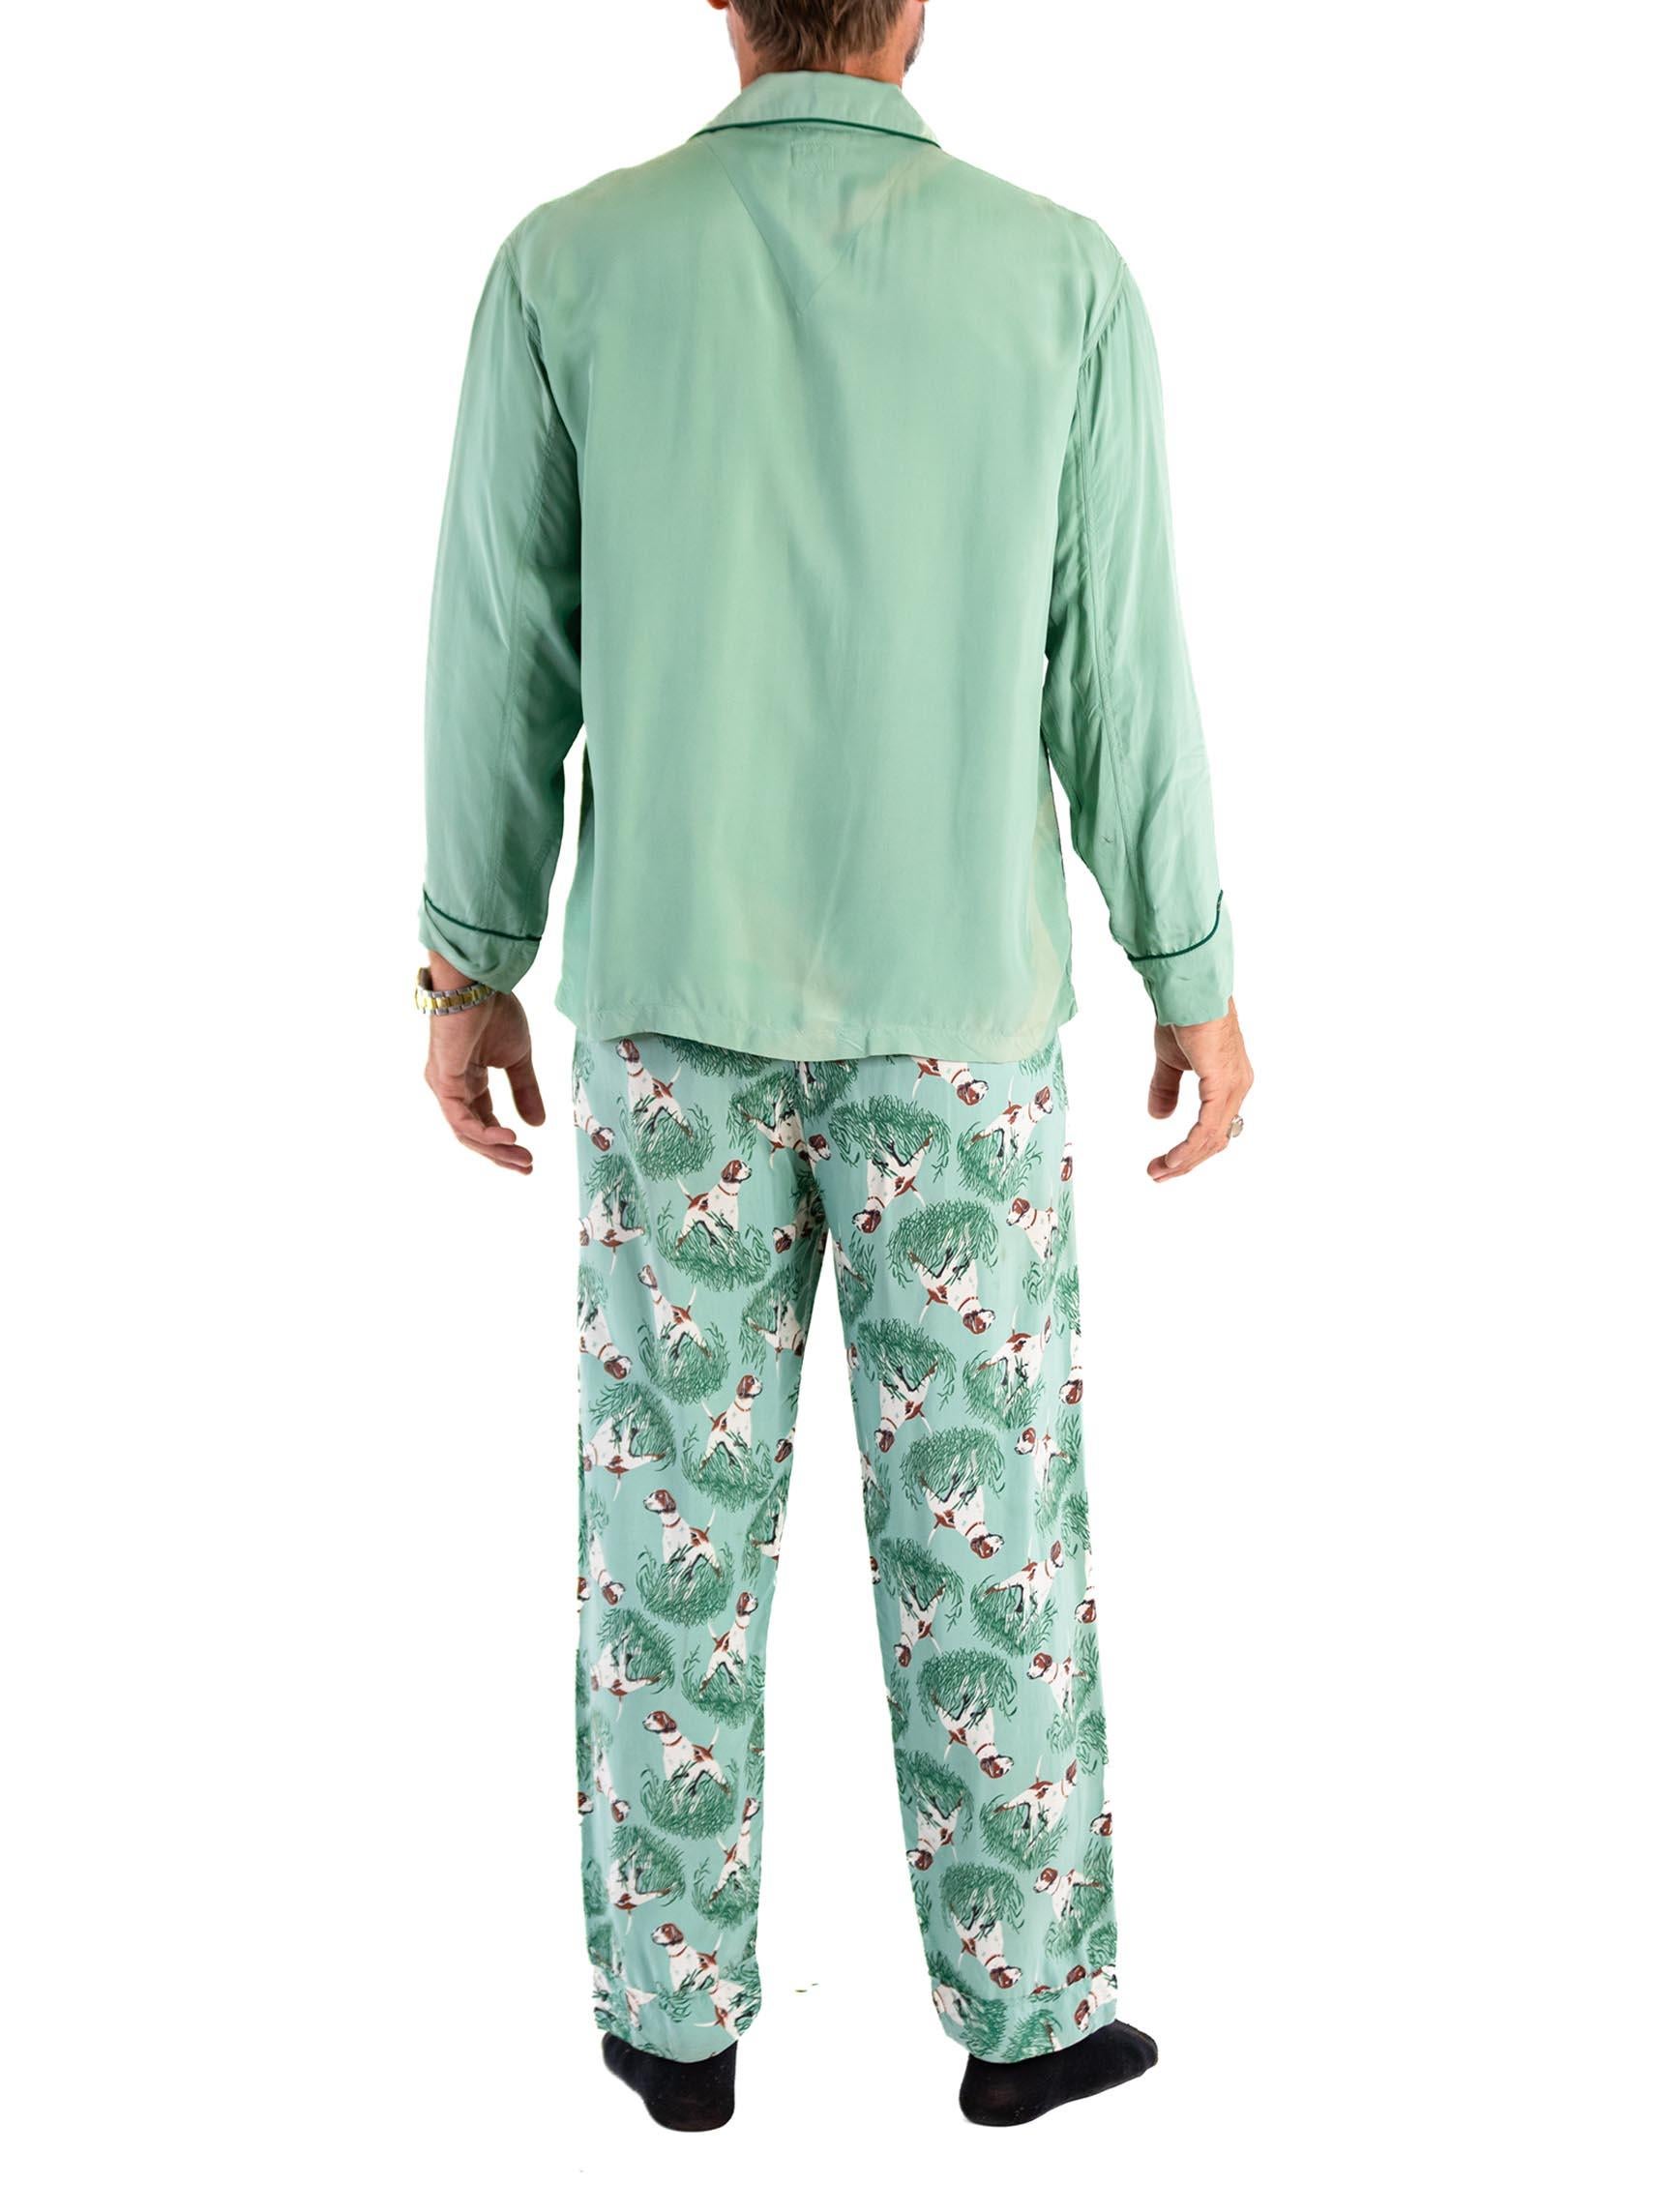 1940S Teal Rayon Solid Top And Hunting Dog Pants Pajamas Set For Sale 3